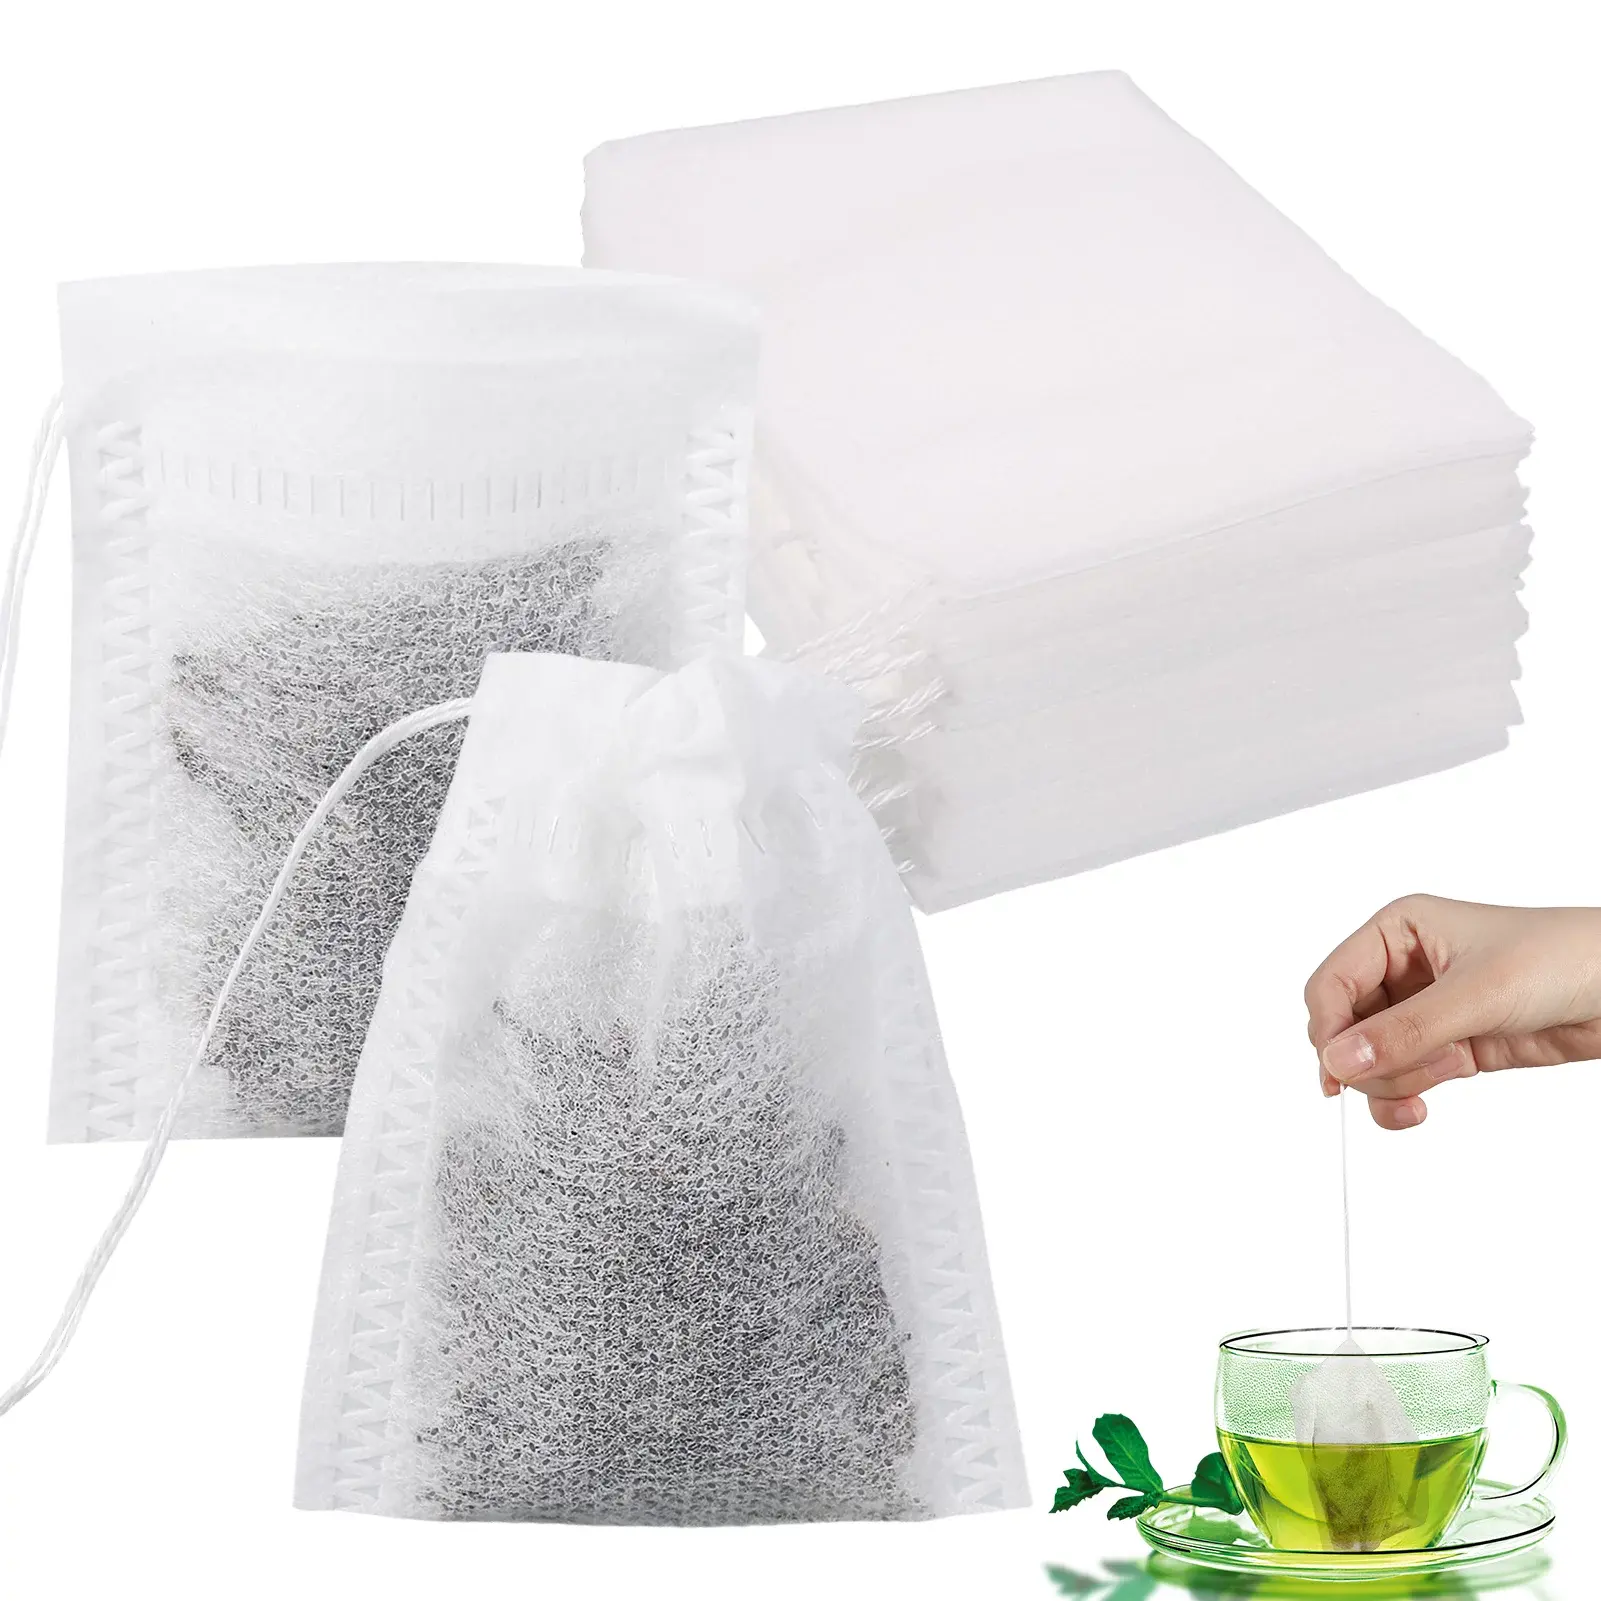 Özel PLA olmayan dokuma mısır elyaf tek kullanımlık bitkisel herb ilaç pamuklu boş kokulu çay filtresi ambalaj çanta beraberlik dize